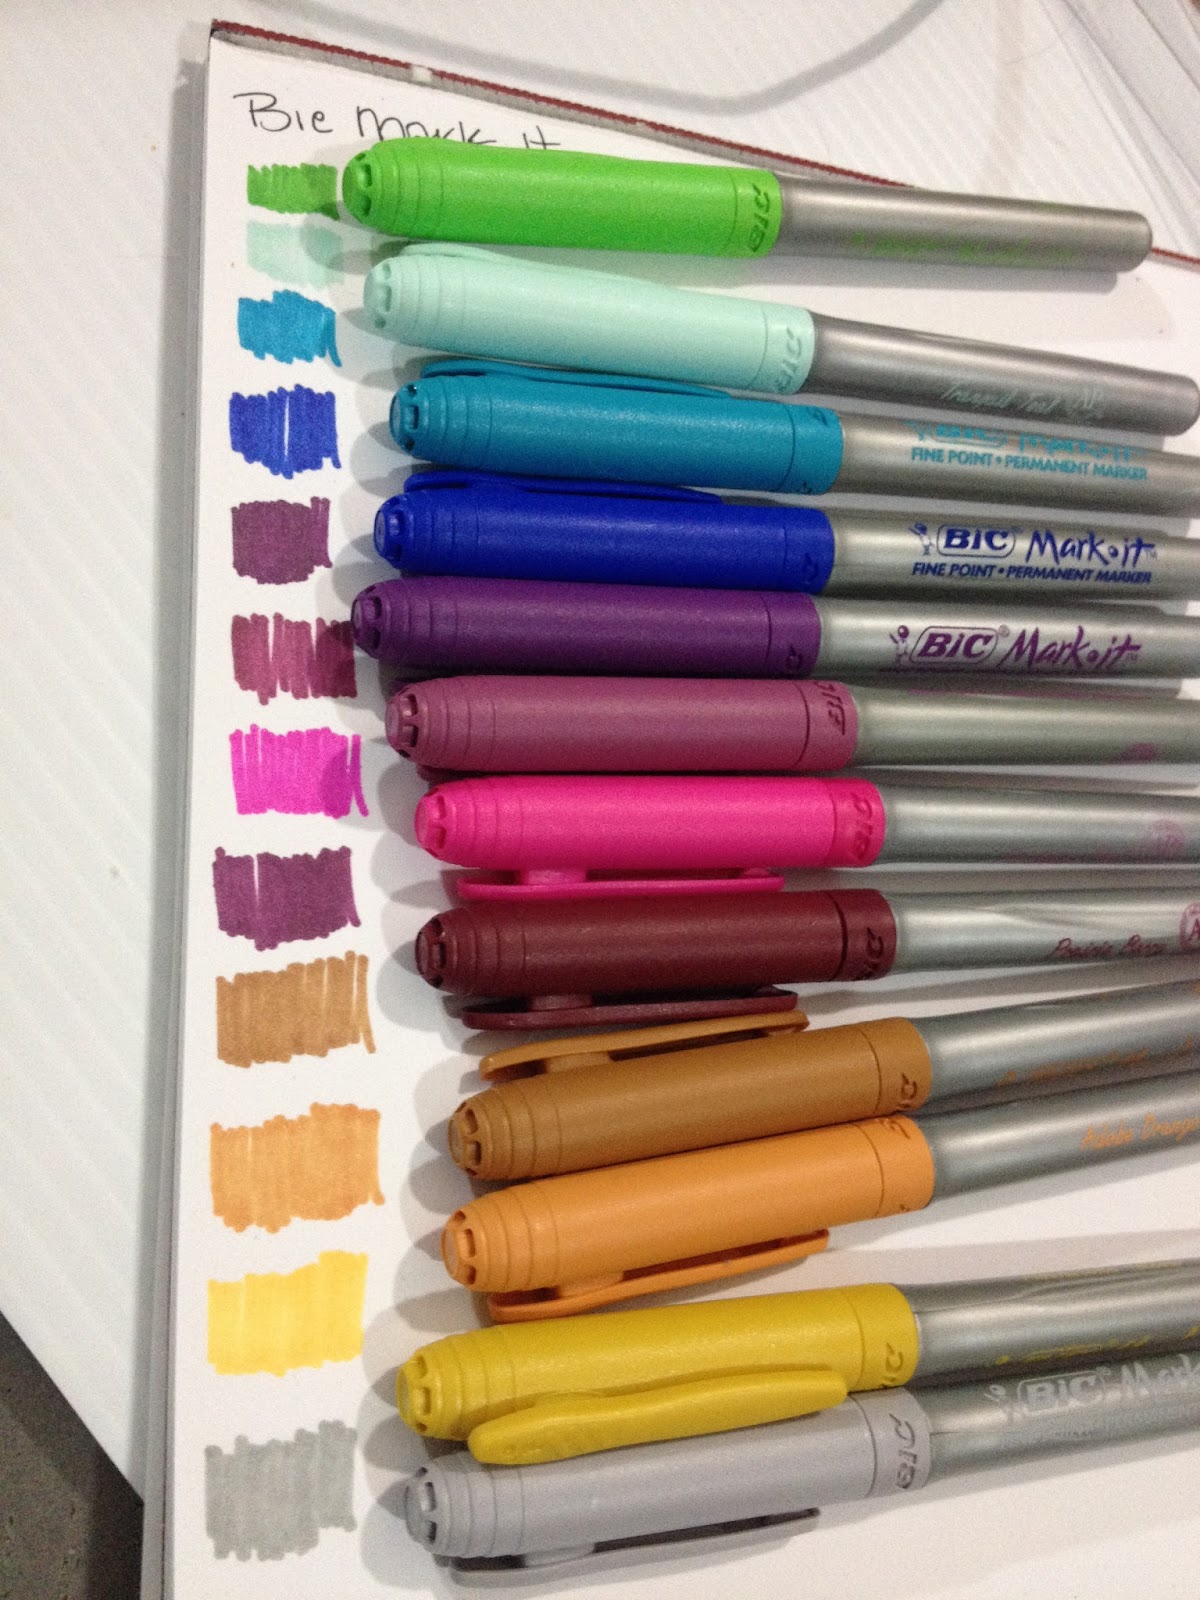 Prairie Paper & Ink: Spectrum Noir Sparkle Pens